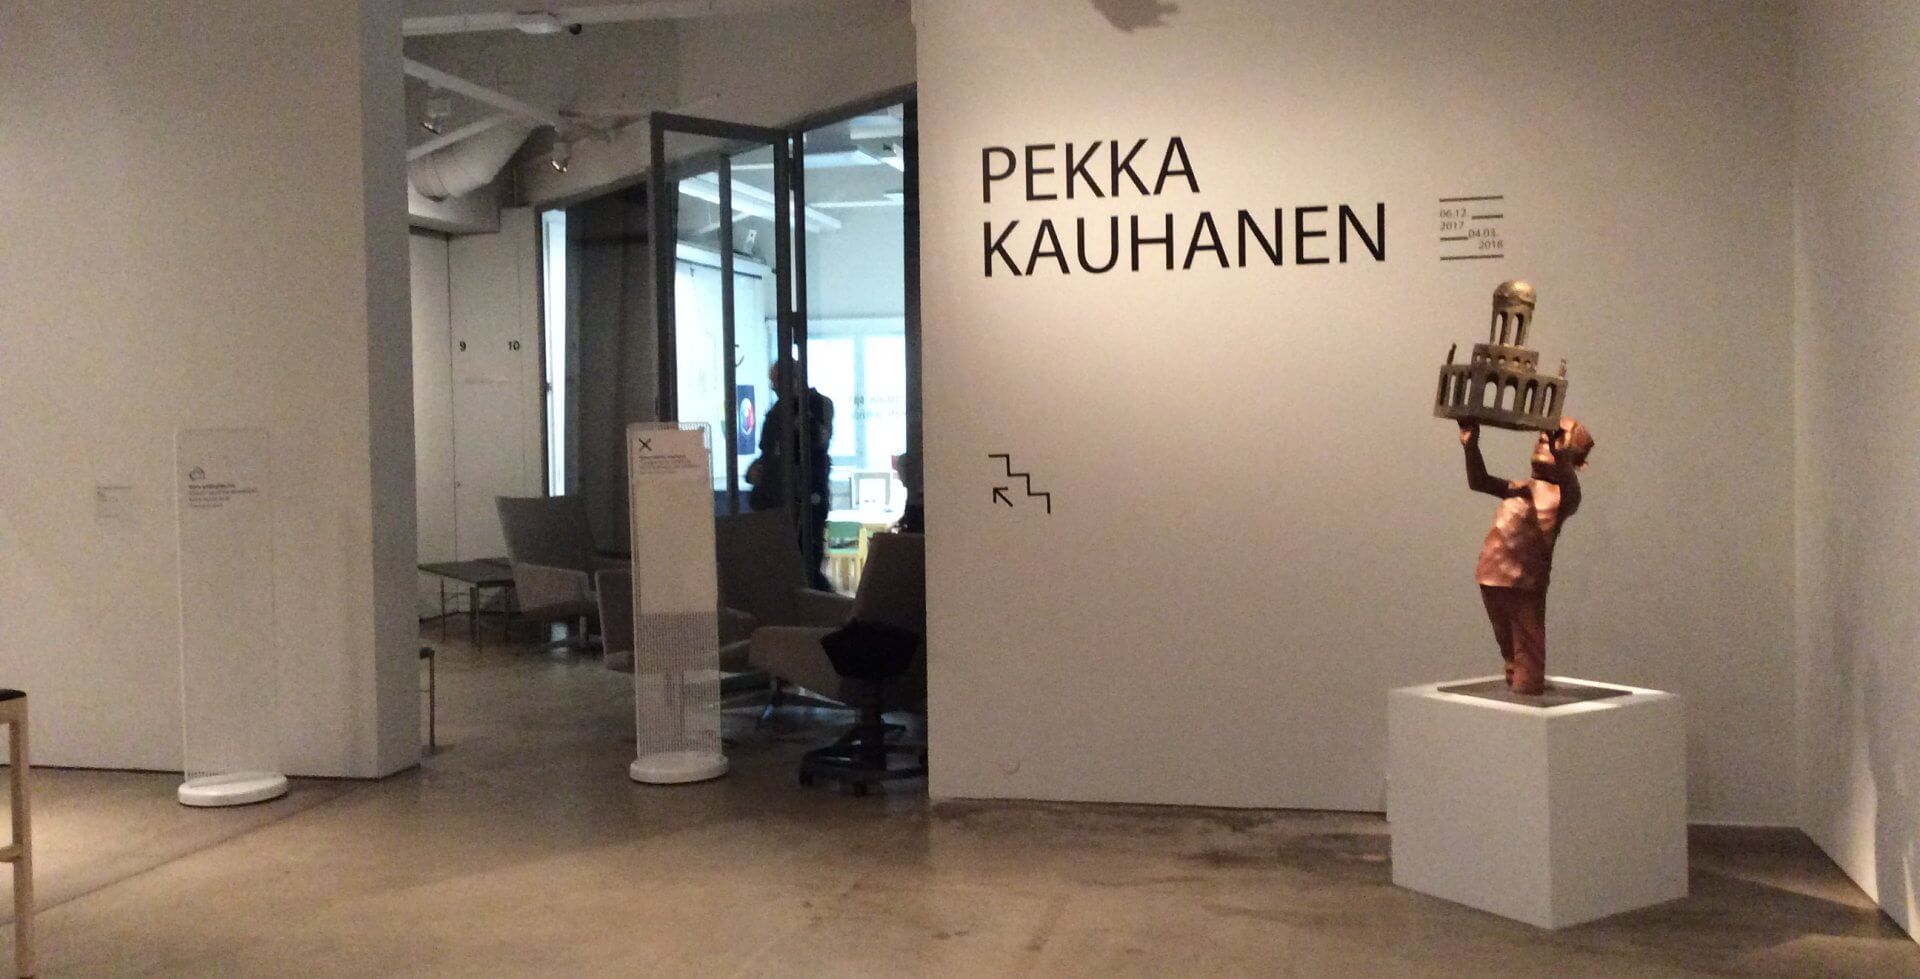 ヘルシンキ市立美術館で開催されていたペッカ・カウハネンの彫刻展